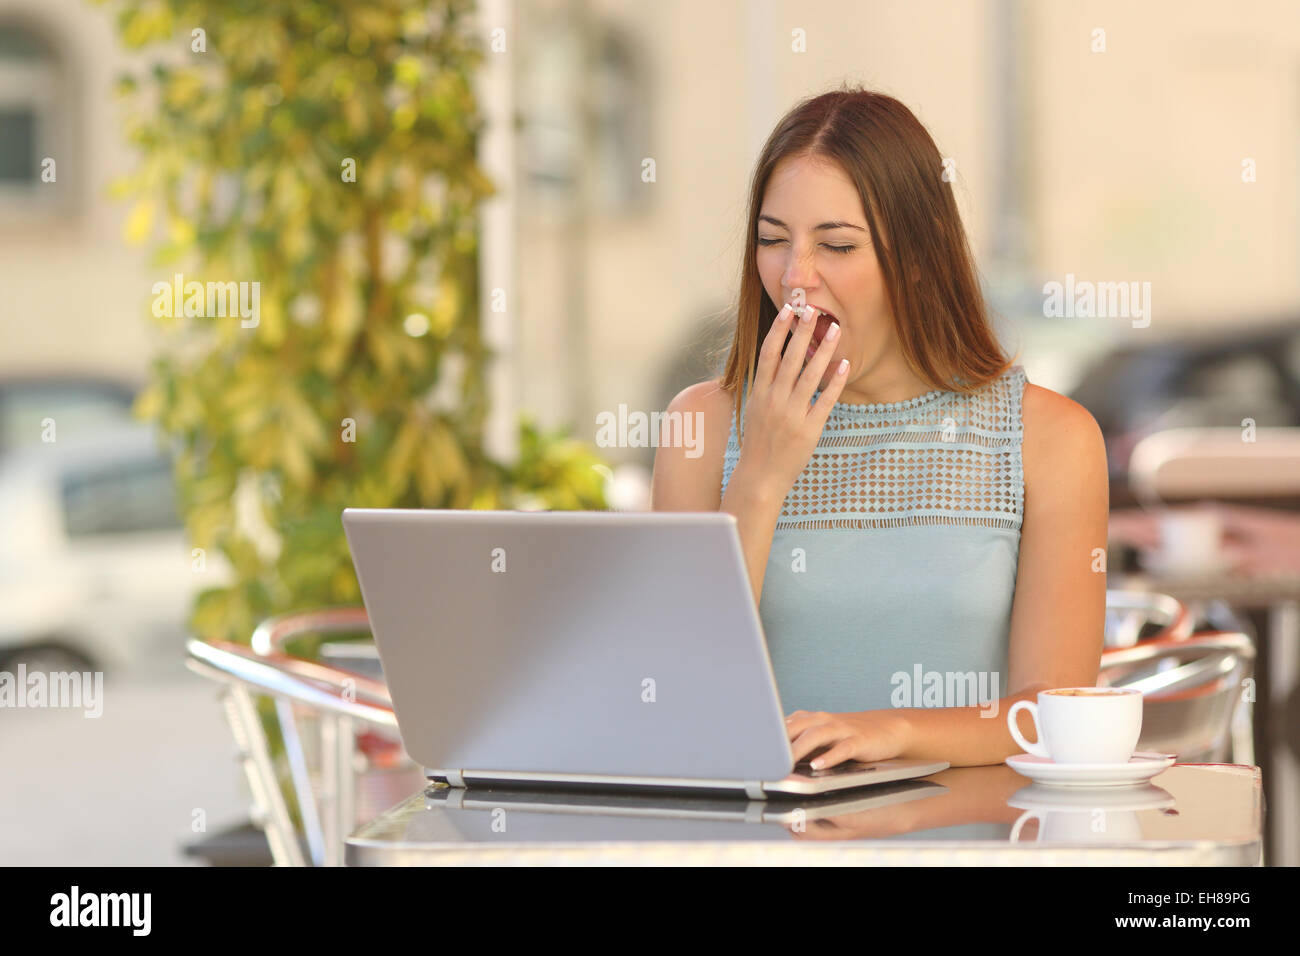 Tired woman yawning et travailler avec un ordinateur portable dans un restaurant pendant le petit déjeuner Banque D'Images